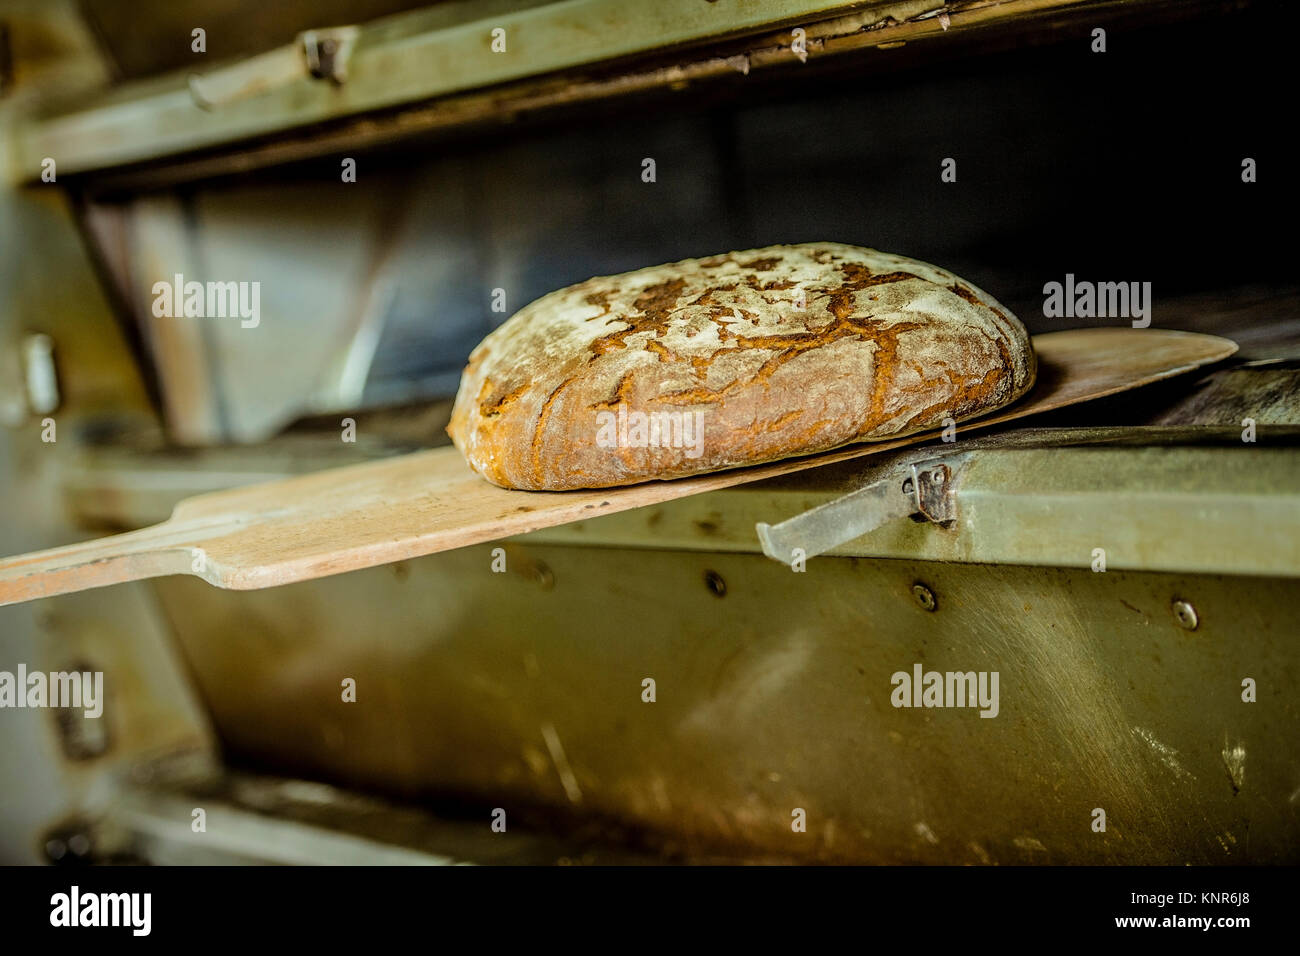 Brot backen, Backstube - la cuisson du pain Banque D'Images